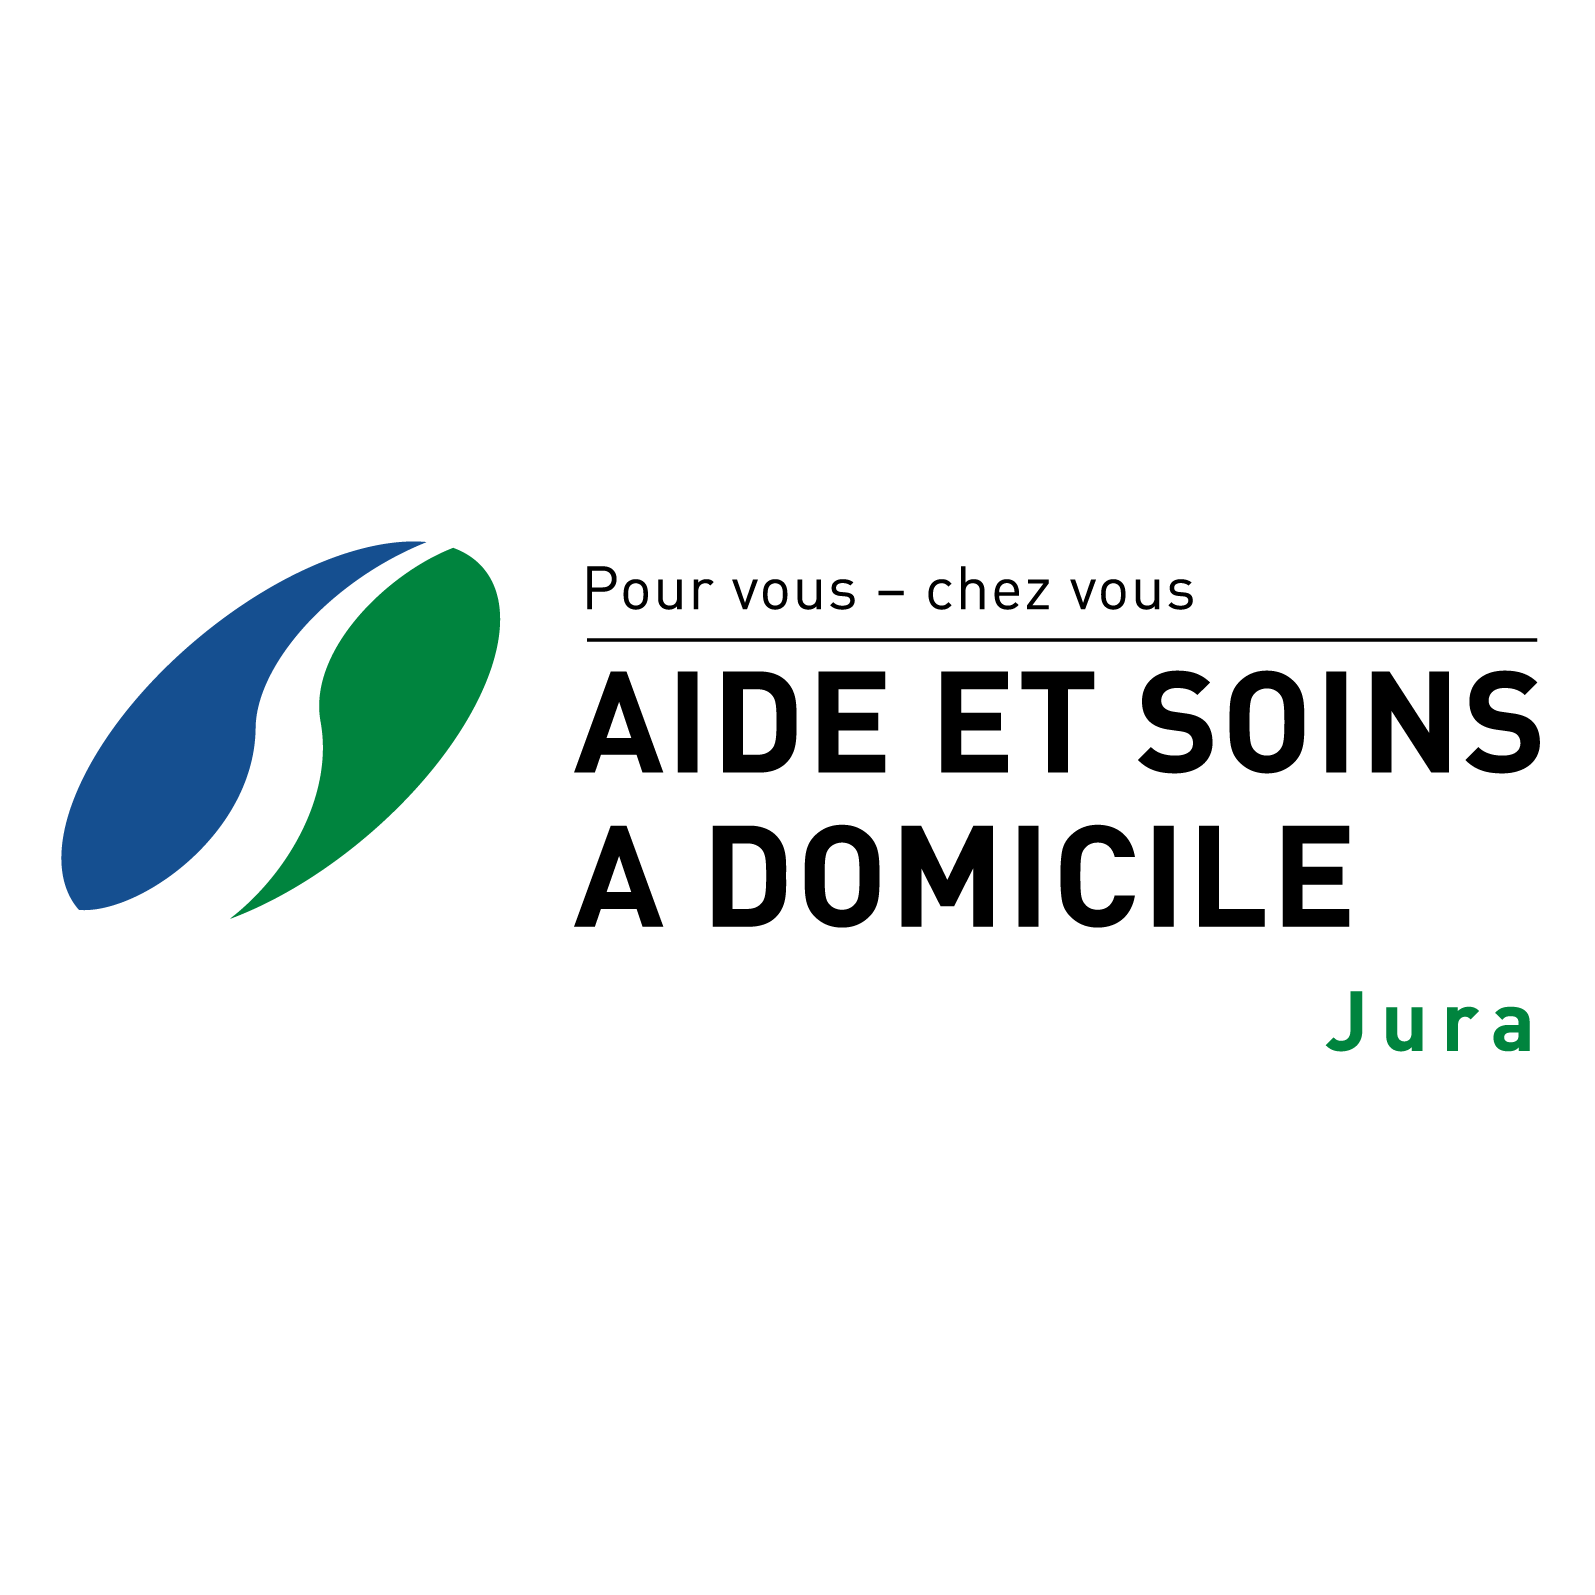 Aide et soins à domicile Jura Logo